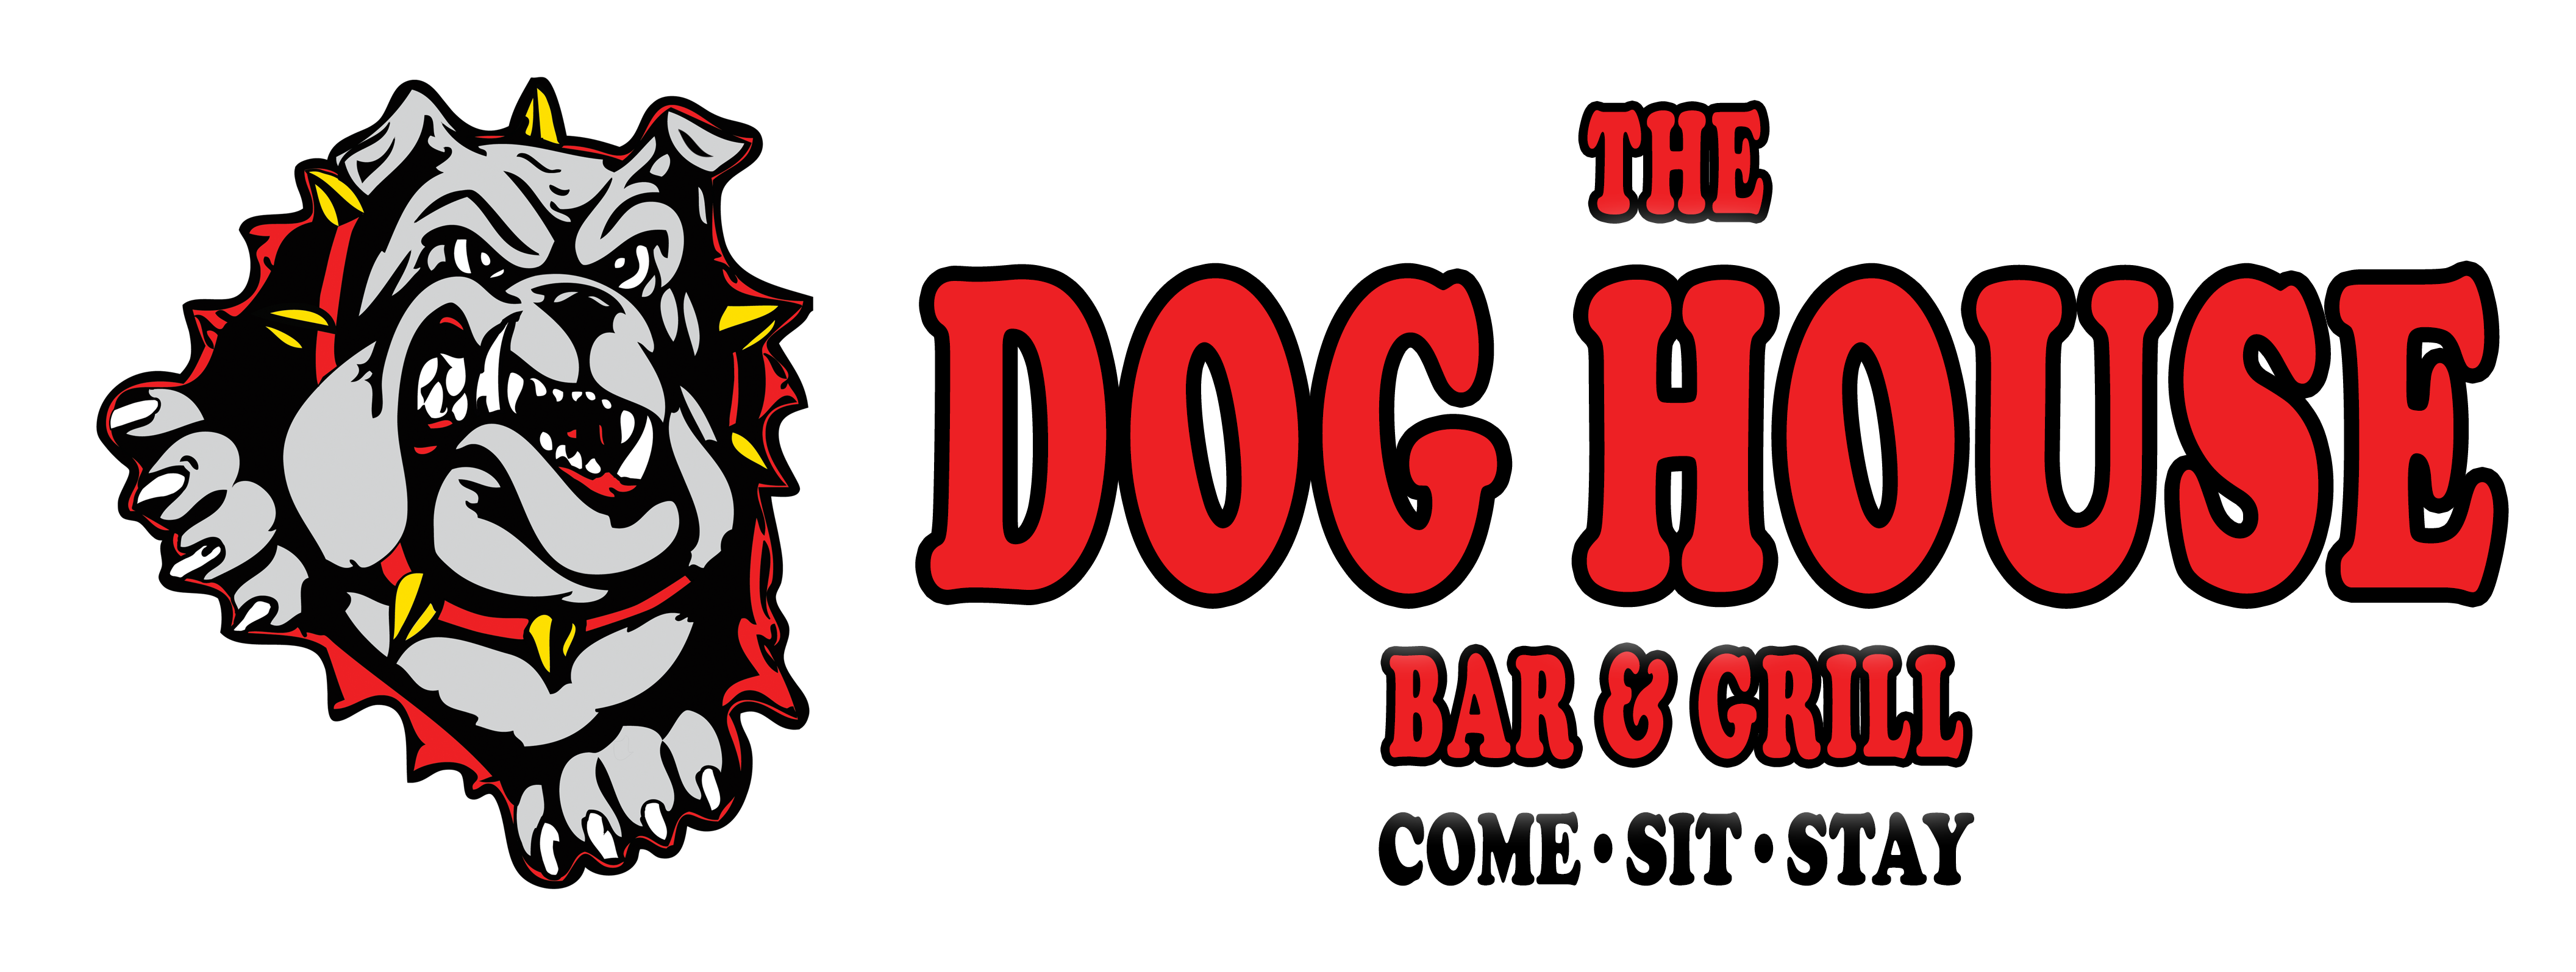 The Dog House Bar & Grill, St. Paul